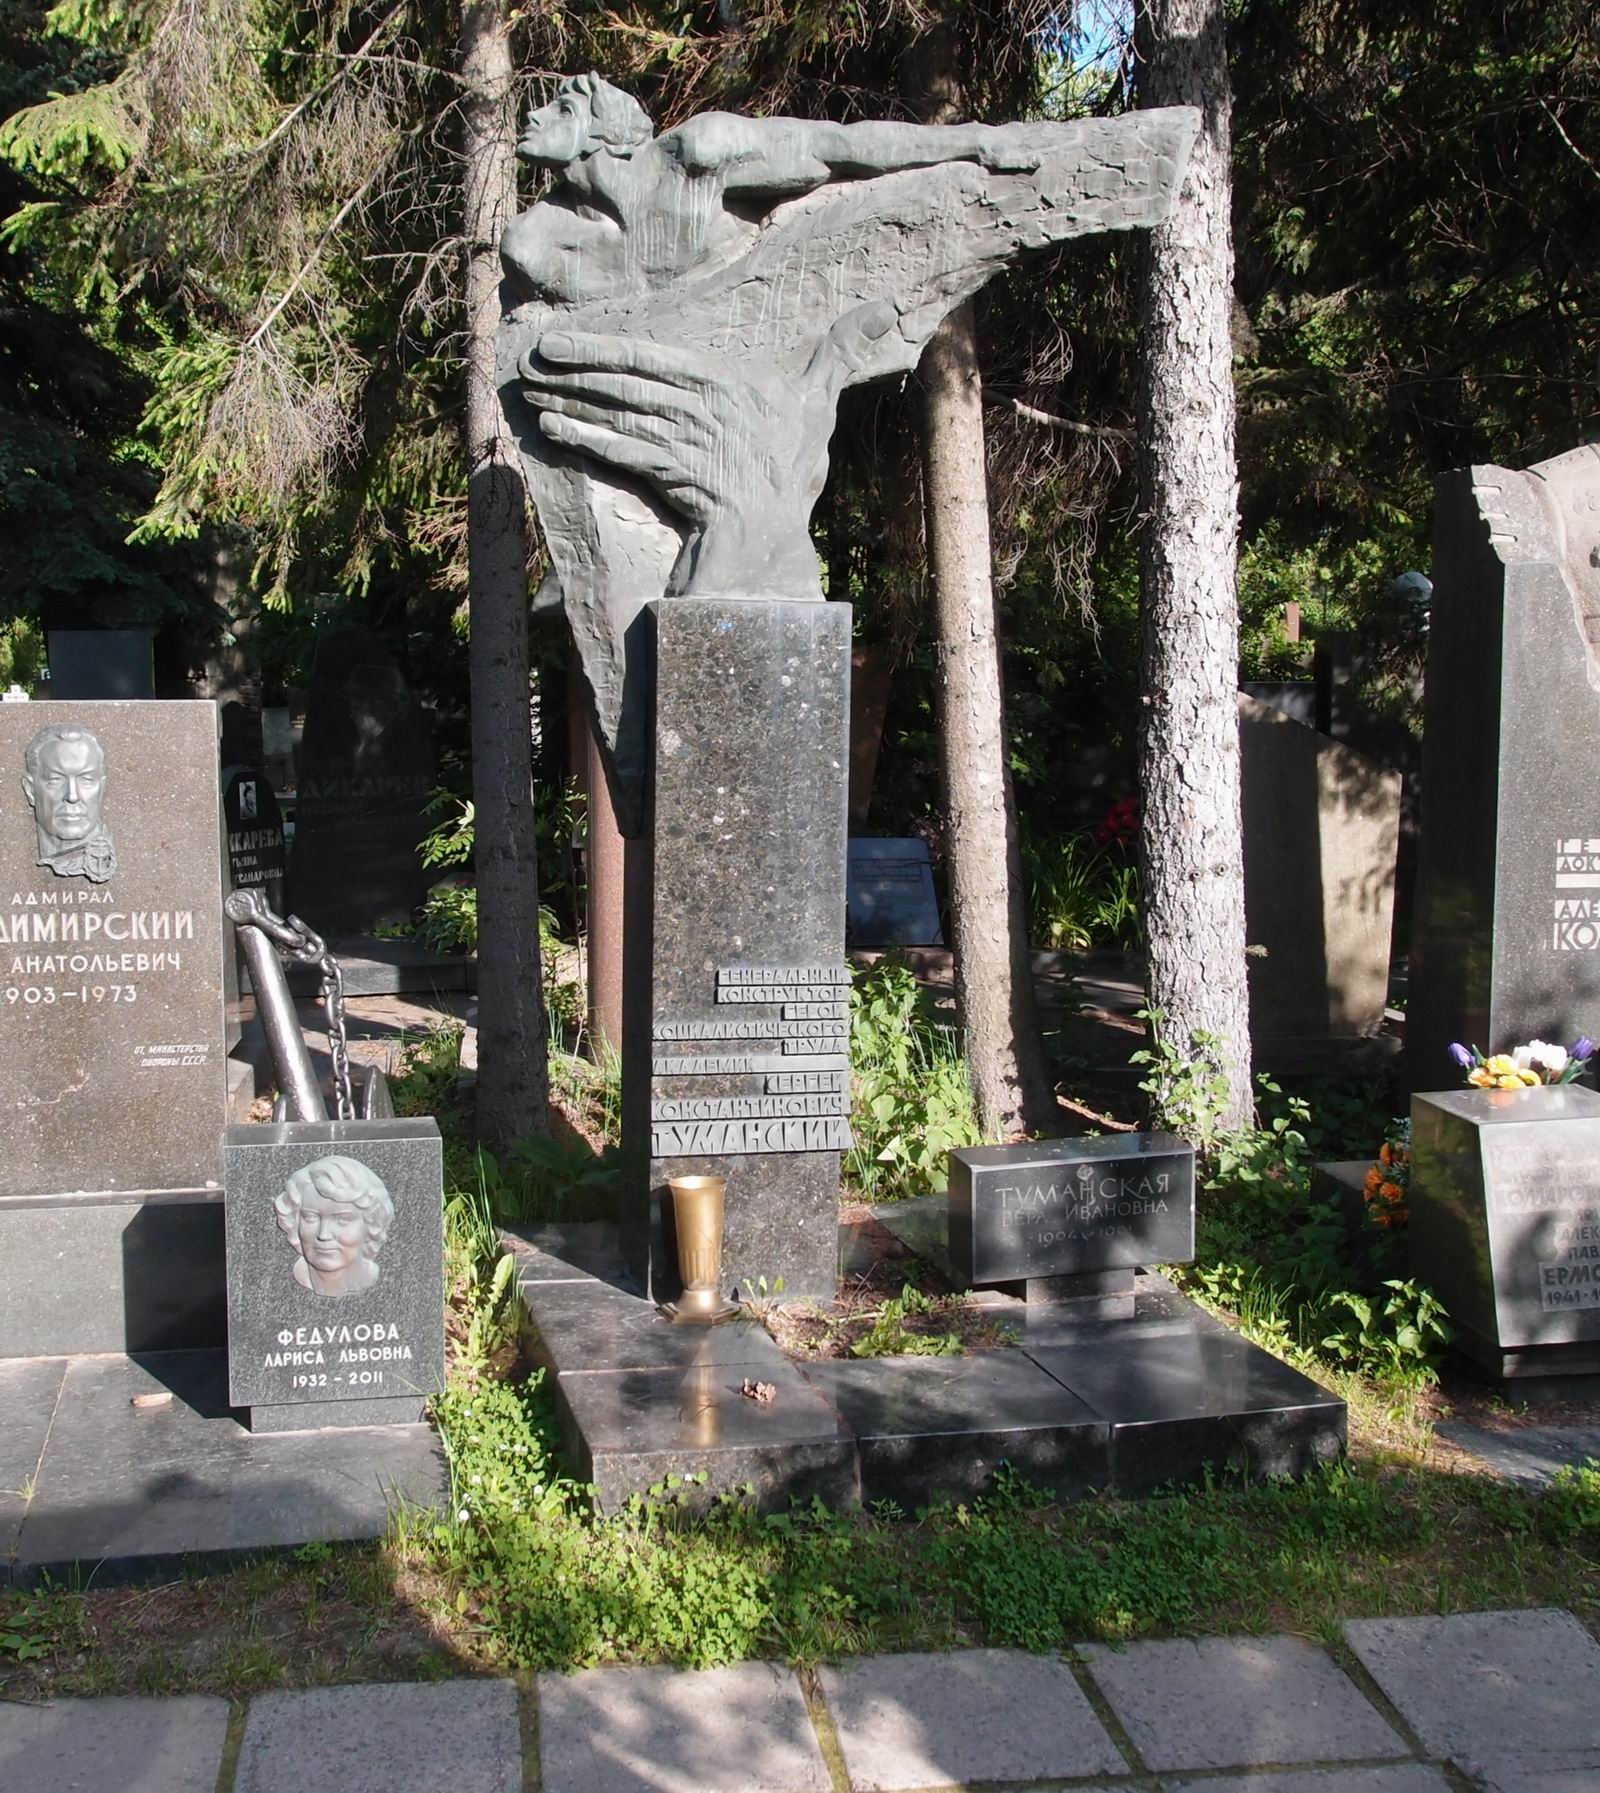 Памятник на могиле Туманского С.К. (1901-1973), ск. И.Васильев, арх. Ю.Воскресенский, на Новодевичьем кладбище (7-6-16).